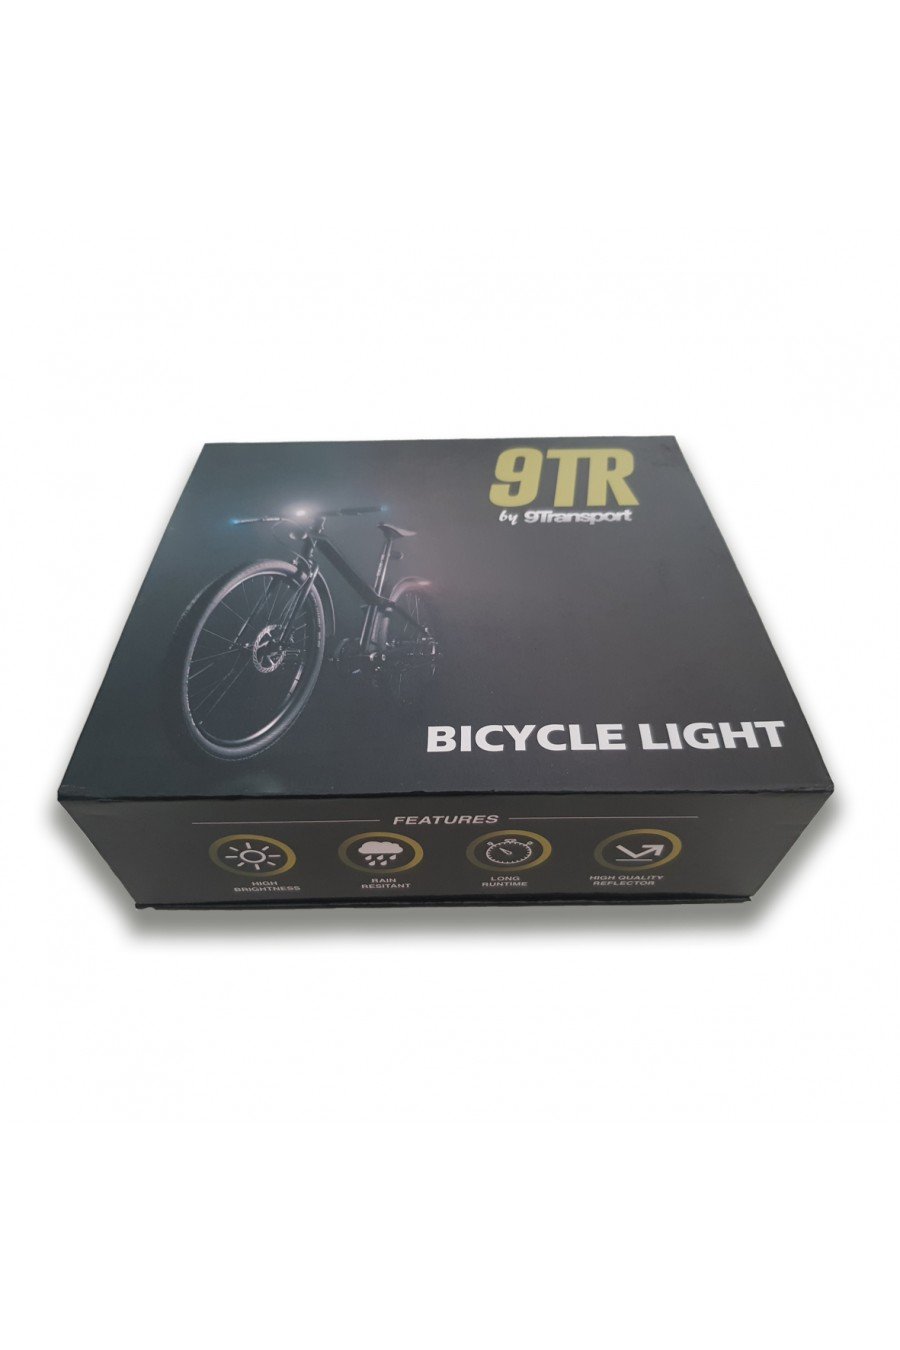 Luz de bicicleta 1 unids 5 LED Power Beam negro faro linterna lámpara  lámpara para bicicleta